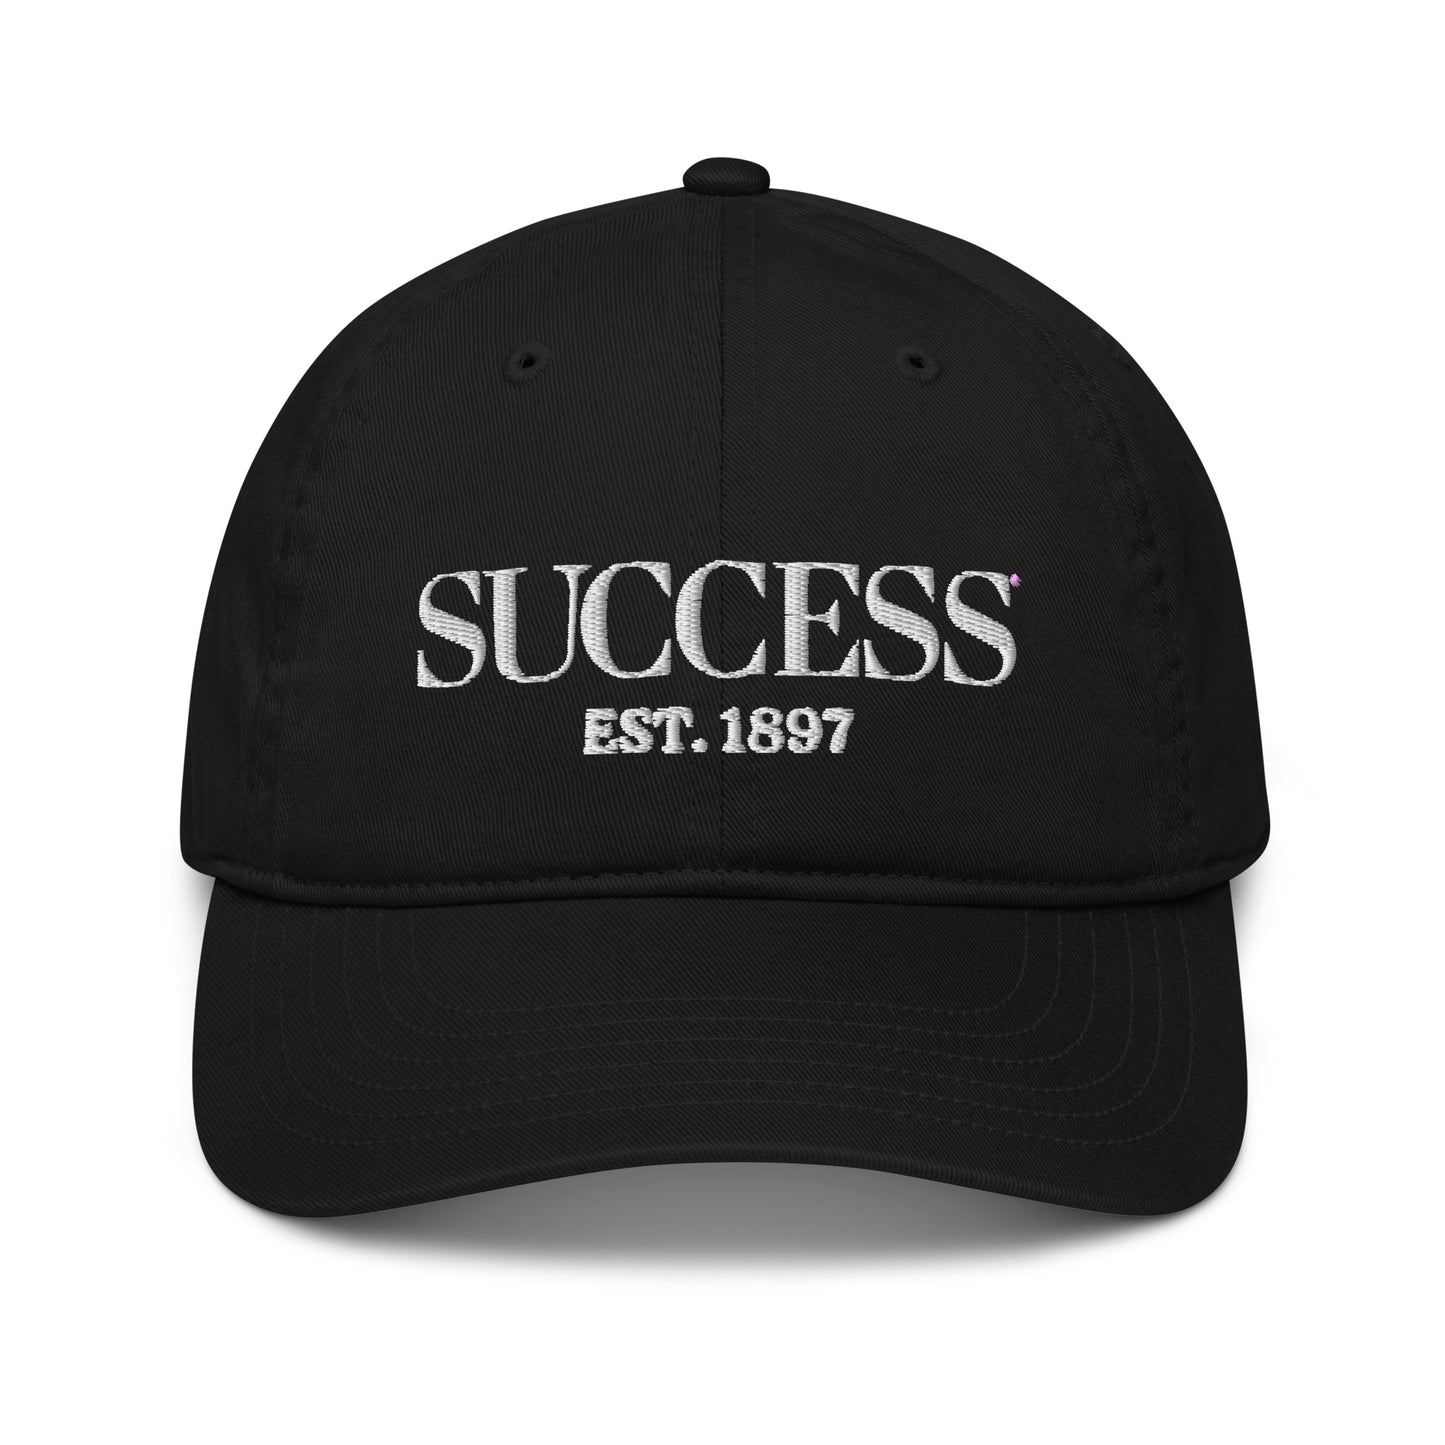 SUCCESS Est. 1897 organic dad hat